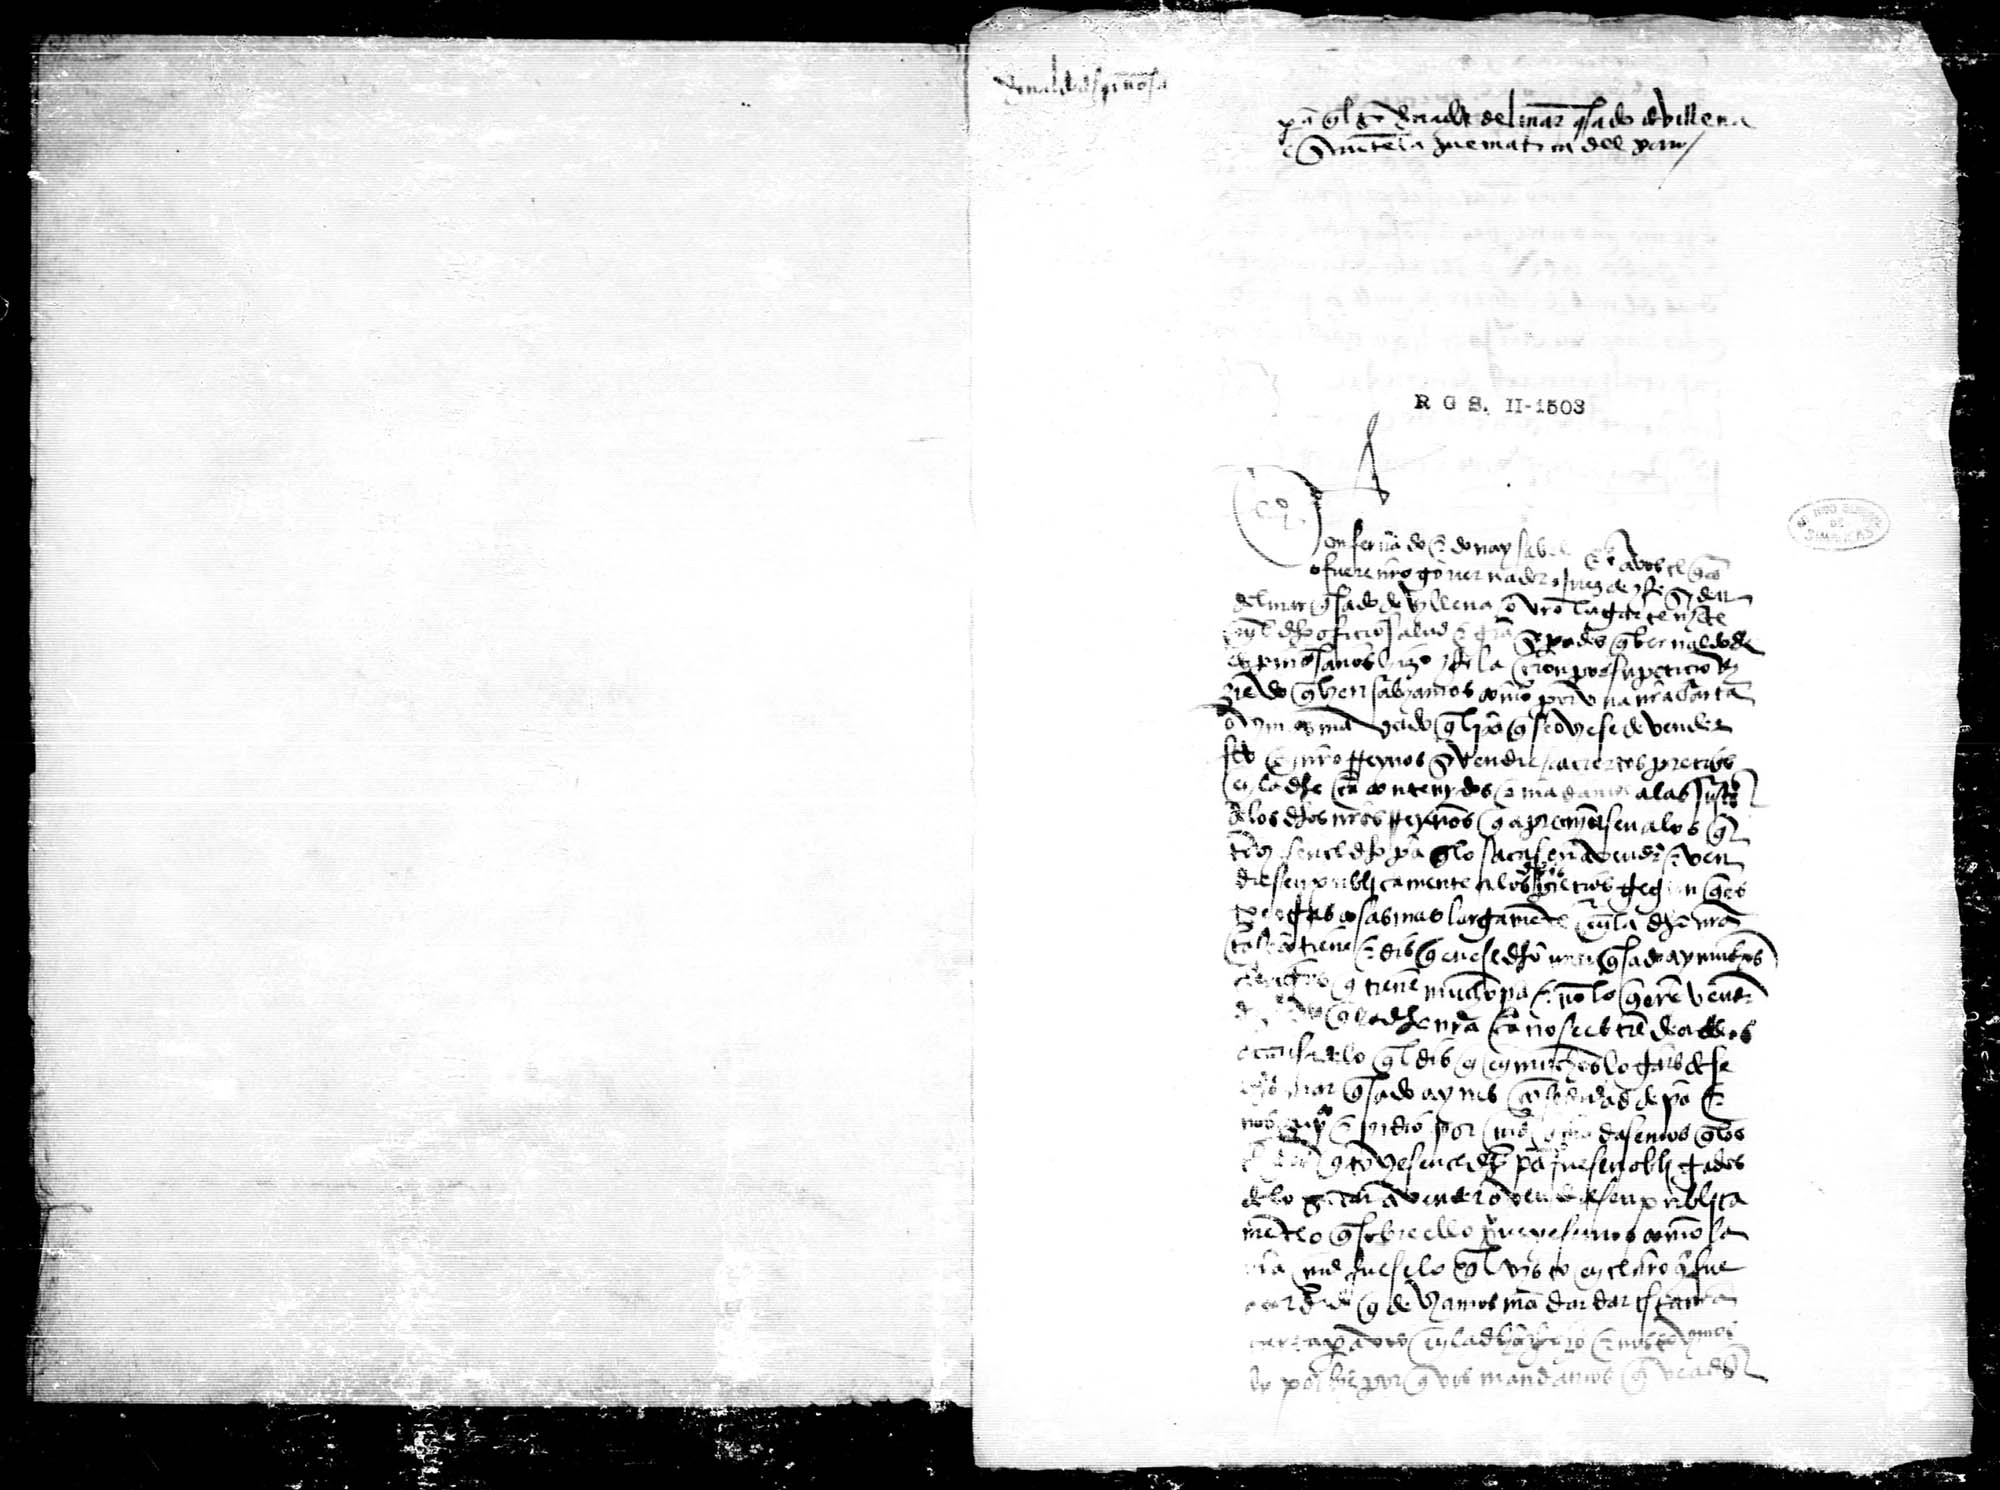 Al gobernador del Marquesado de Villena, a petición de Bernardo de Espinosa, para que haga cumplir a los clérigos de su jurisdicción la pragmática de los precios de los cereales.